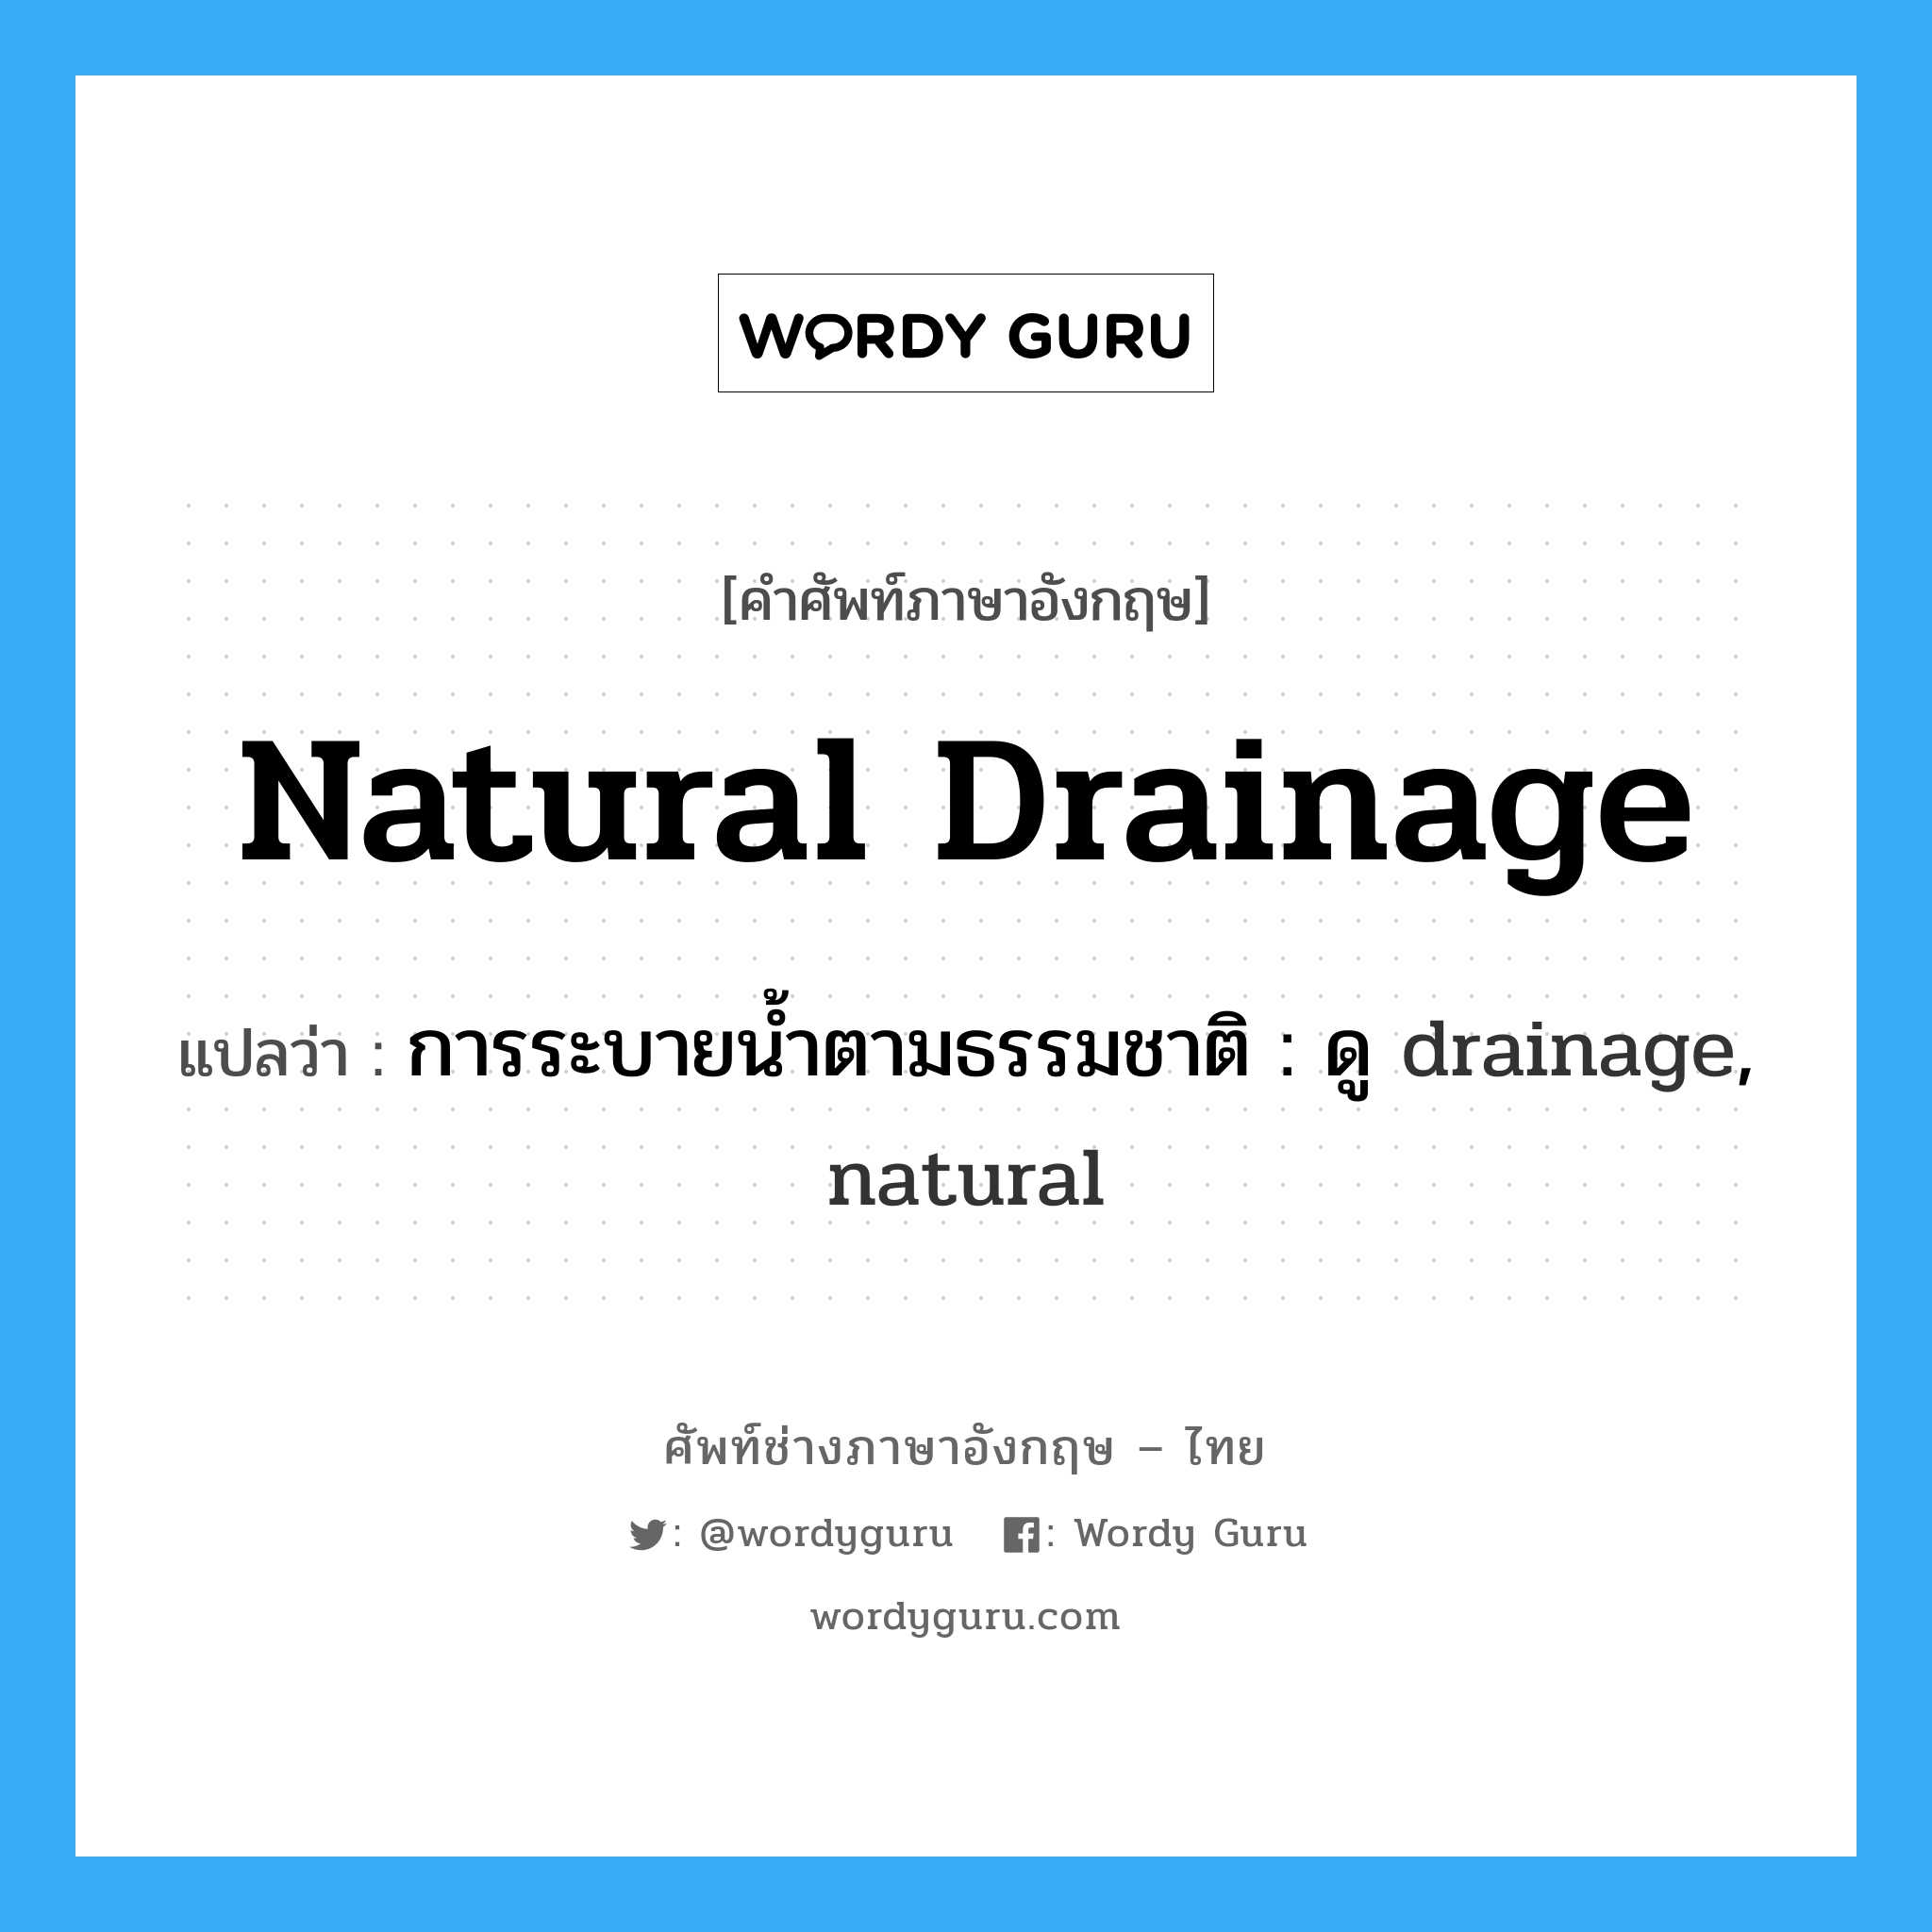 การระบายน้ำตามธรรมชาติ : ดู drainage, natural ภาษาอังกฤษ?, คำศัพท์ช่างภาษาอังกฤษ - ไทย การระบายน้ำตามธรรมชาติ : ดู drainage, natural คำศัพท์ภาษาอังกฤษ การระบายน้ำตามธรรมชาติ : ดู drainage, natural แปลว่า natural drainage